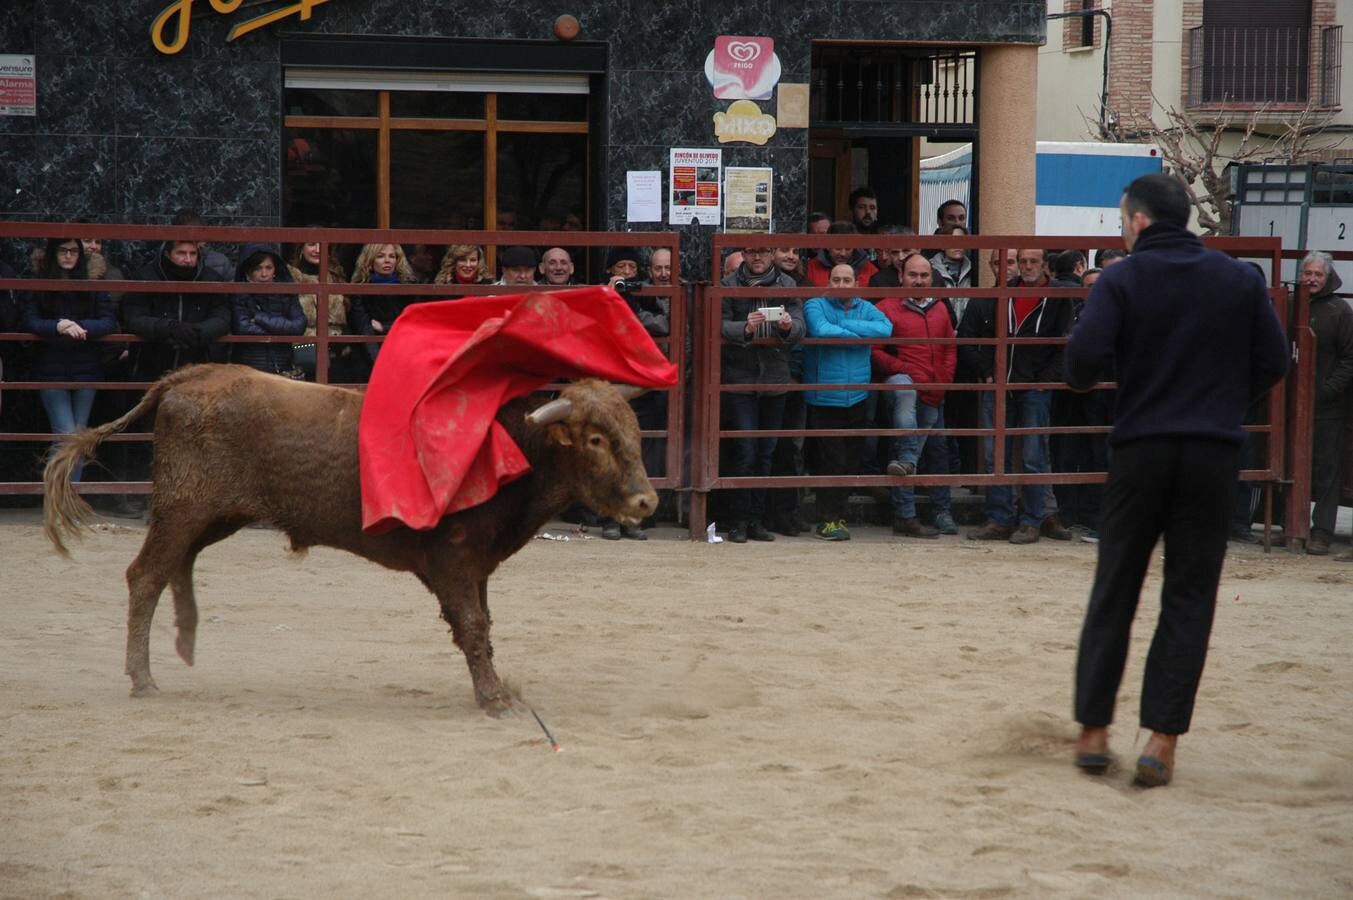 Este sábado ha tenido lugar el Festejo taurino en Rincón de Olivedo. Han participado alumnos de la escuela taurina de Zaragoza. El acto está incluido en las fiestas de la juventud de Rincón de Olivedo.